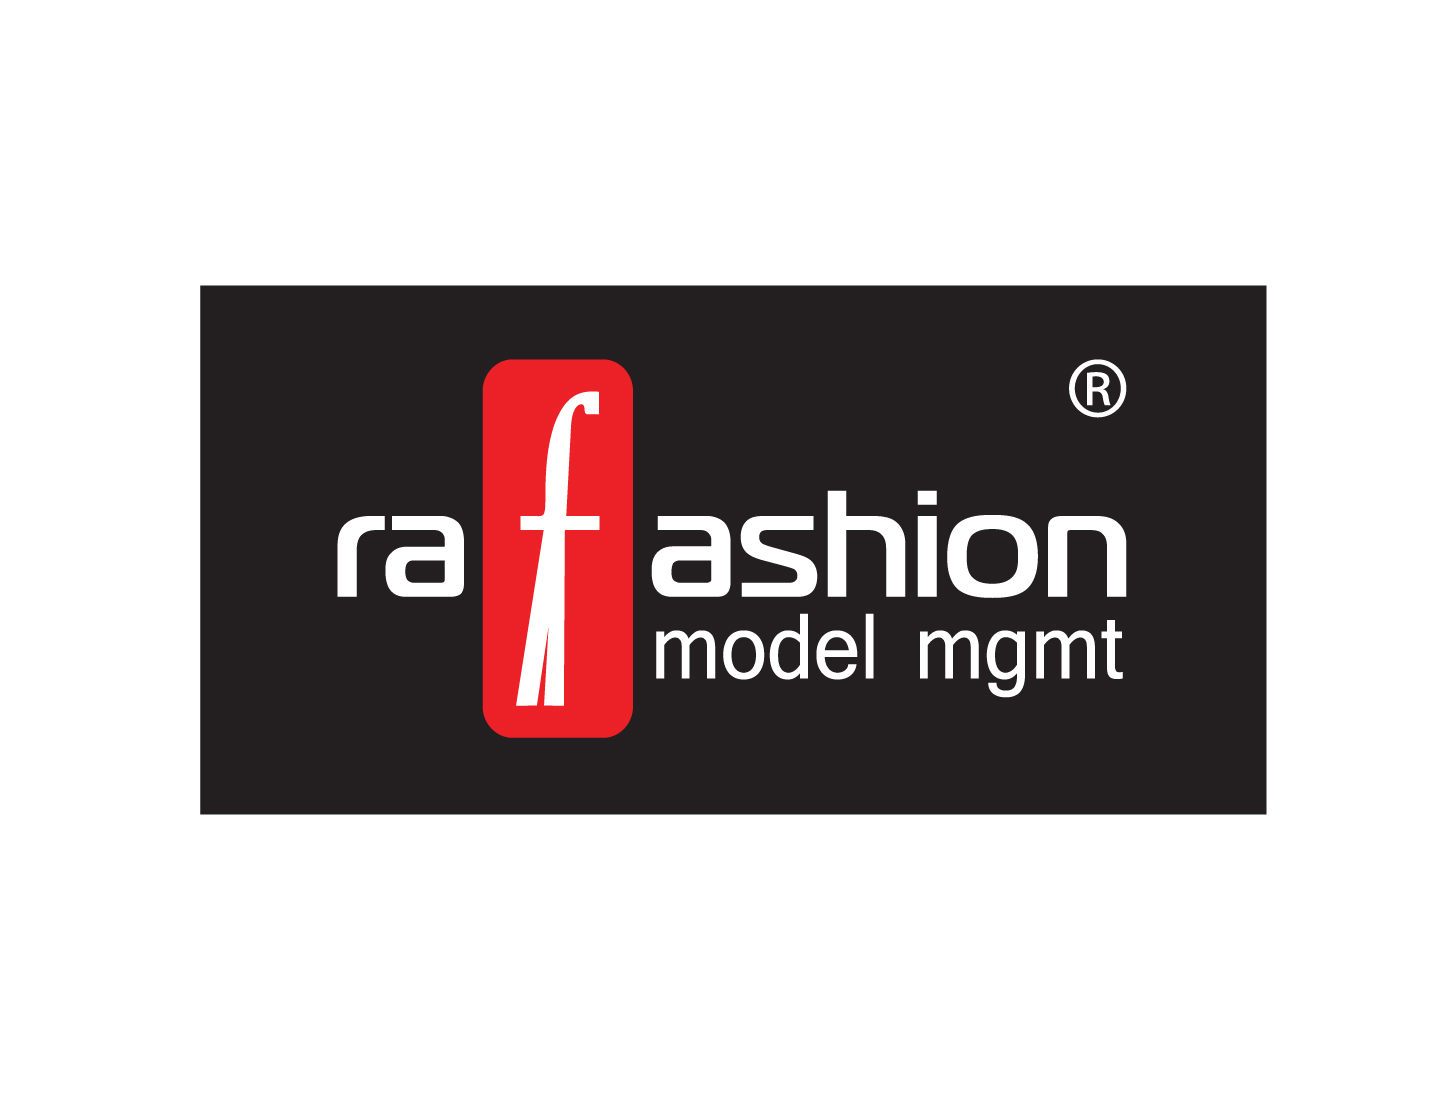 Ra-fashion